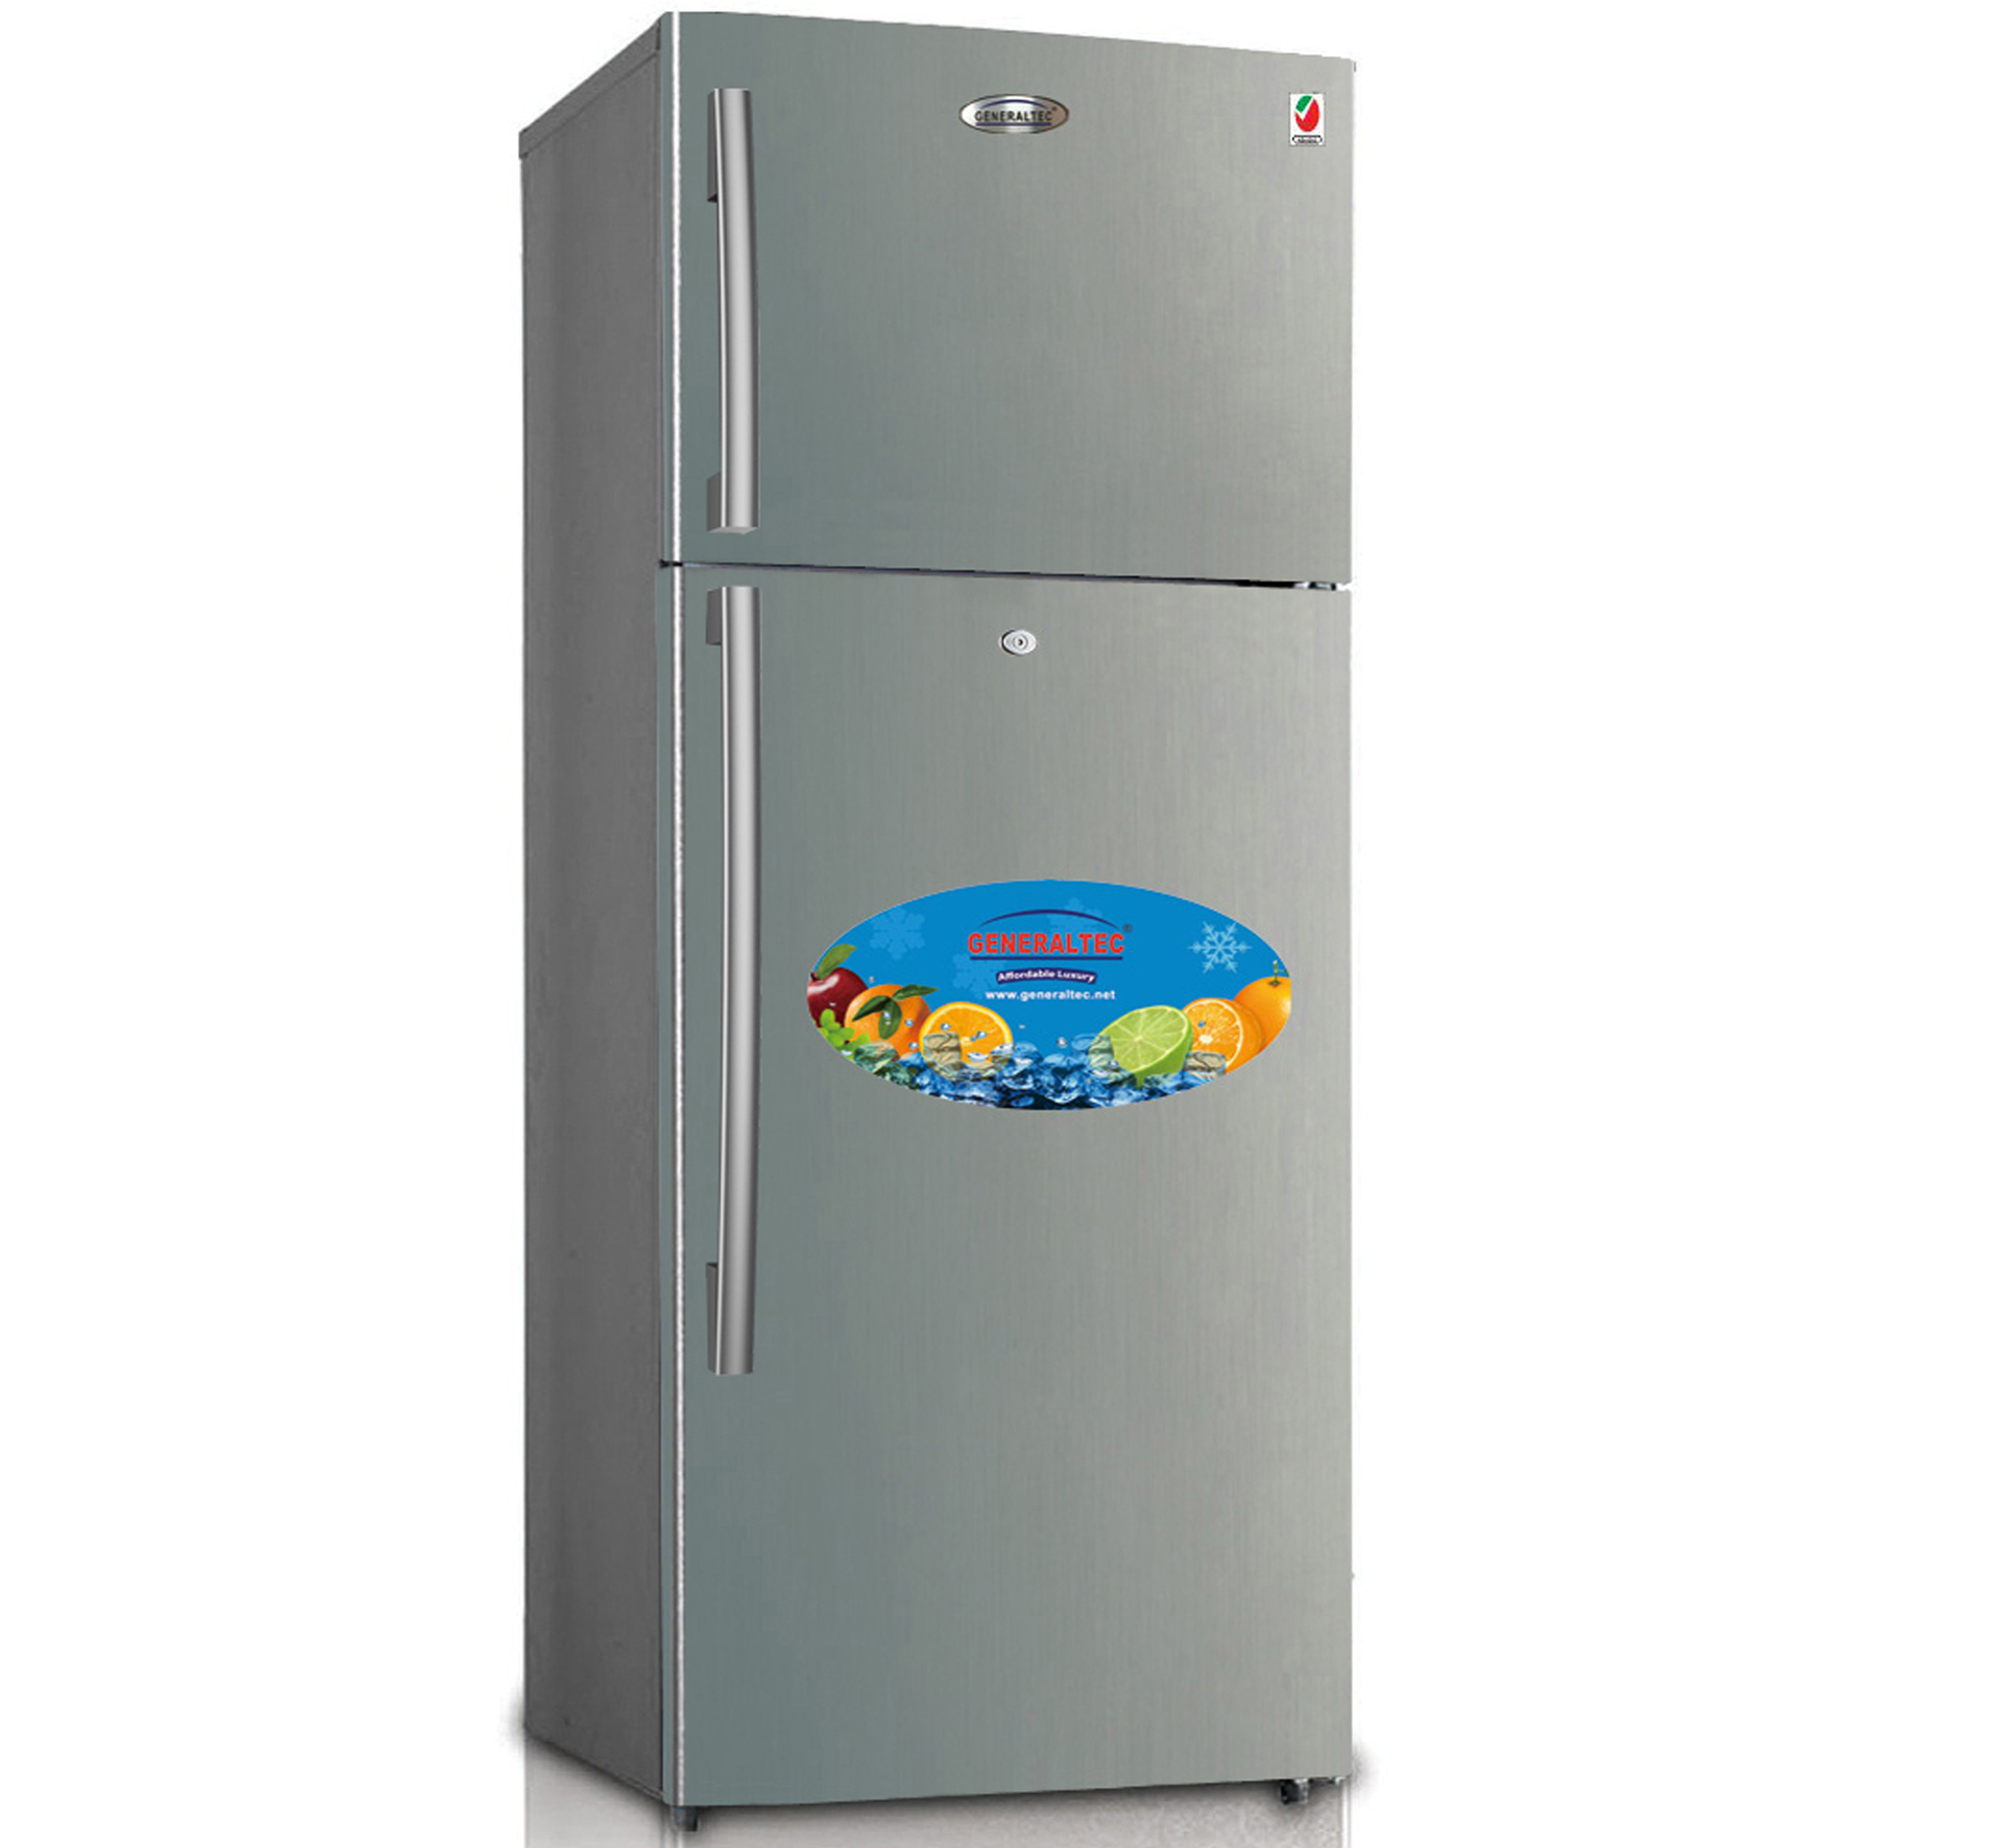 Refrigerator Double Door Model No. GR700SN